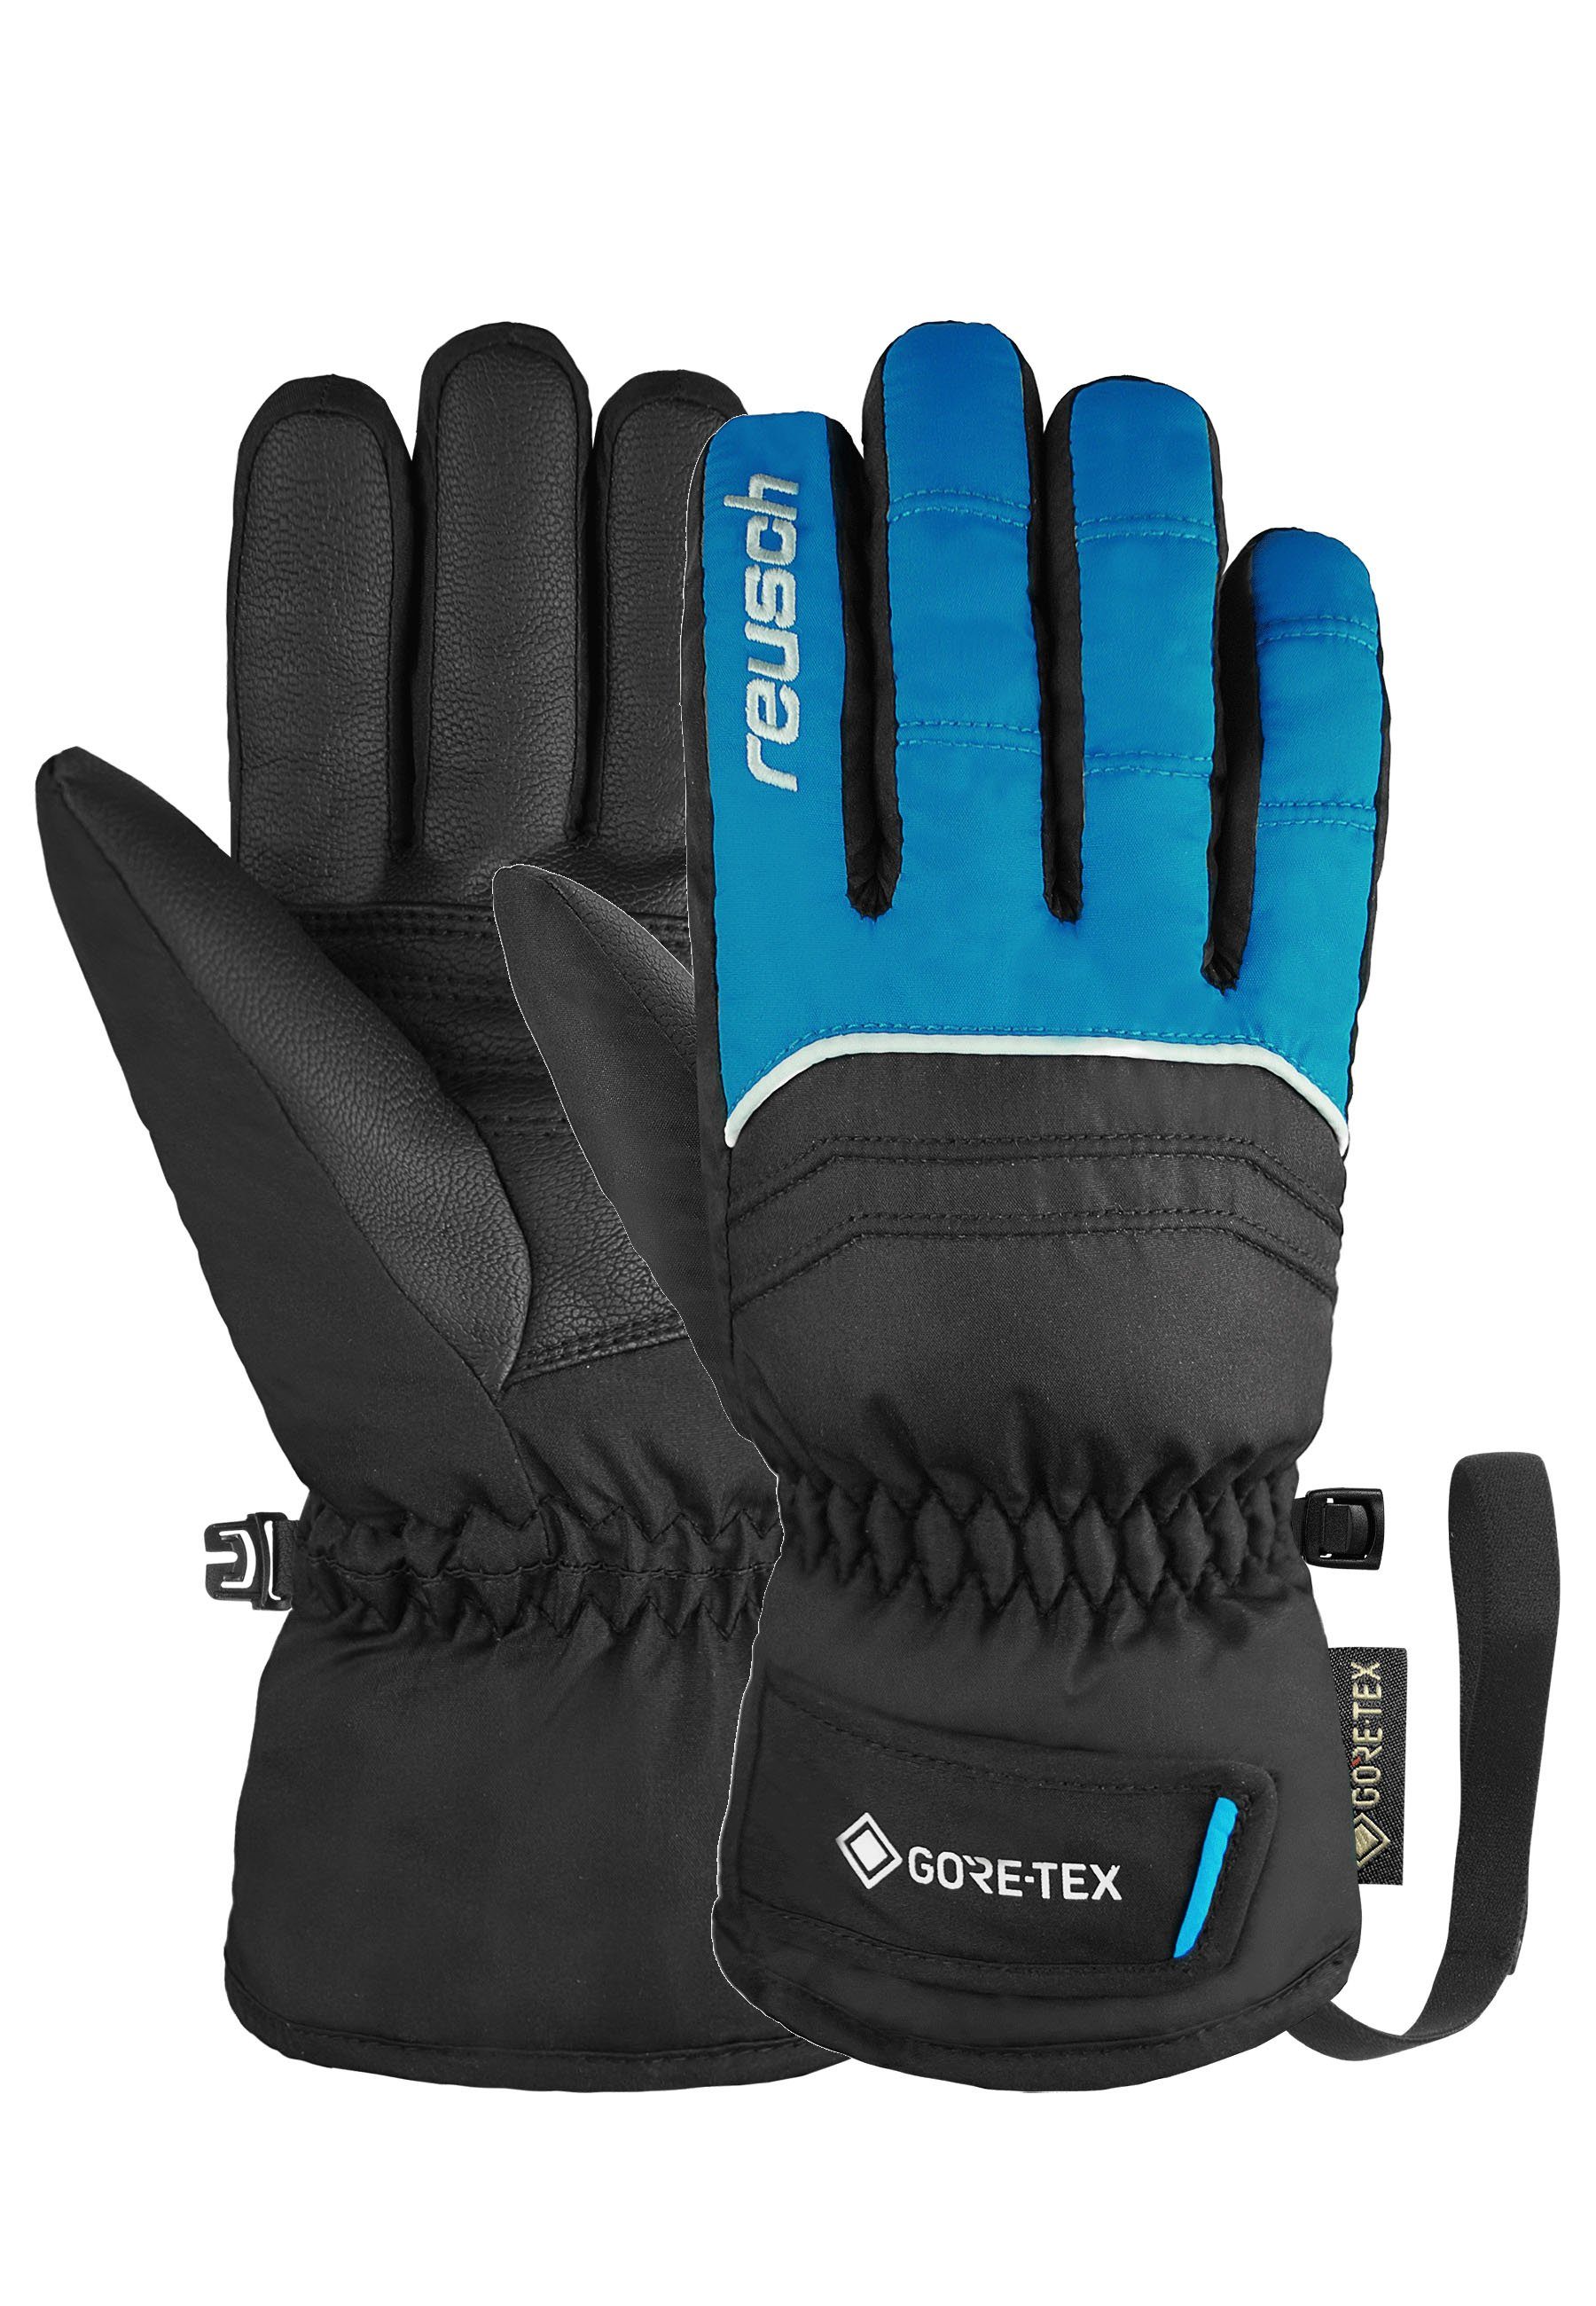 beste Qualität Reusch blau-schwarz GORE-TEX wasserdichter Teddy Funktionsmembran Skihandschuhe mit